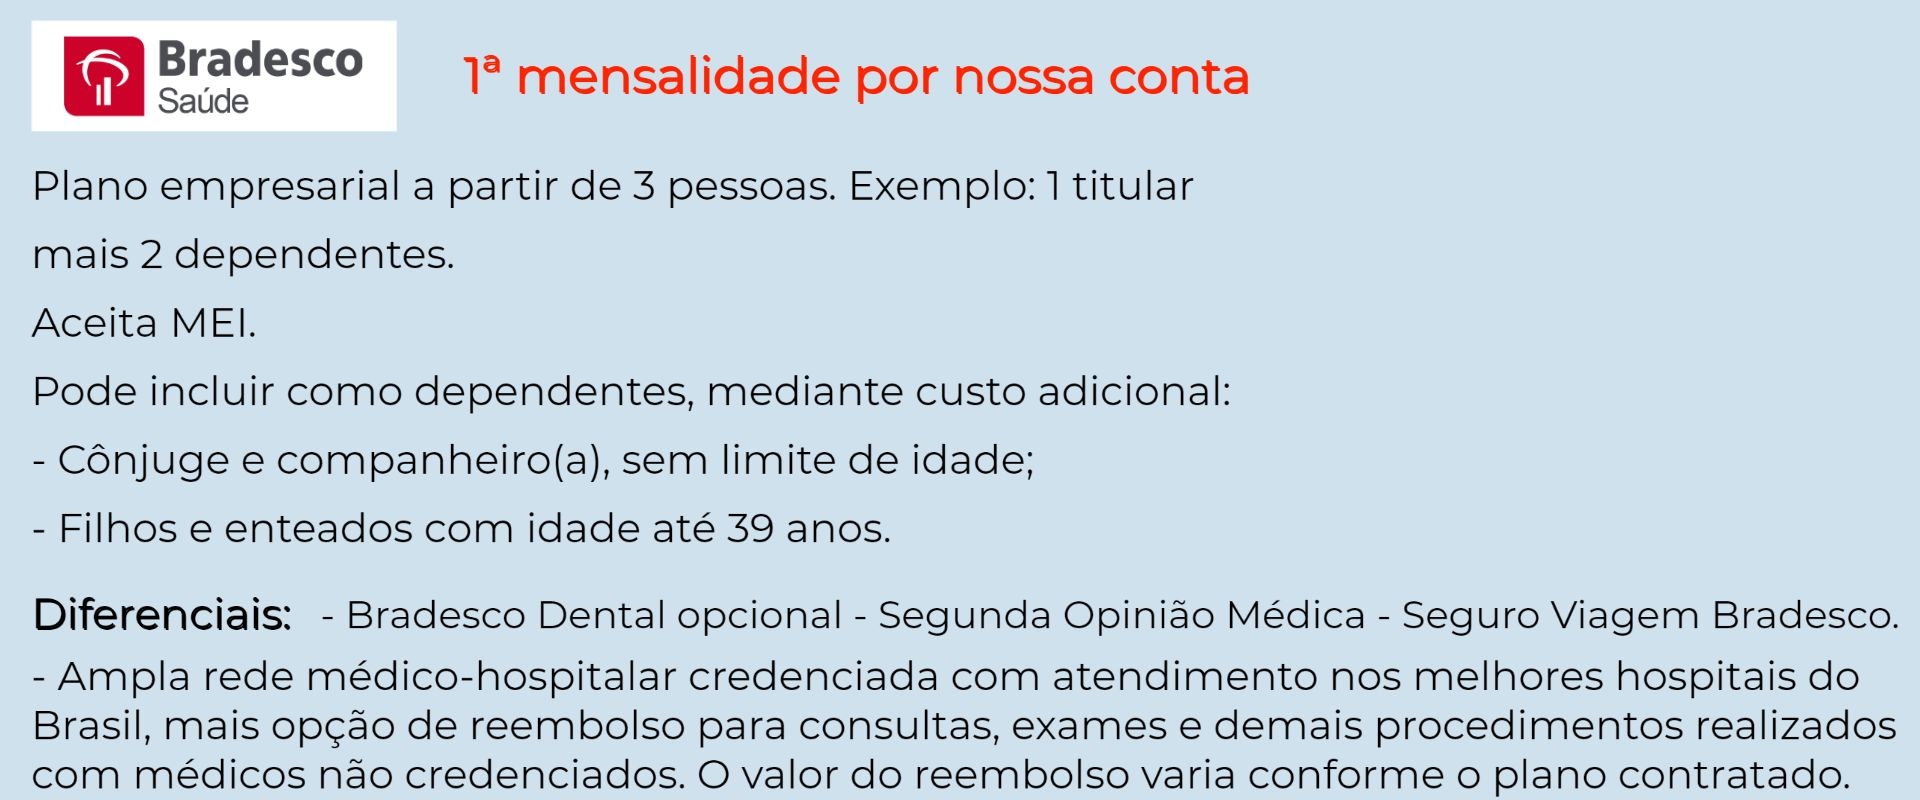 Bradesco Saúde Empresarial - Marechal Floriano